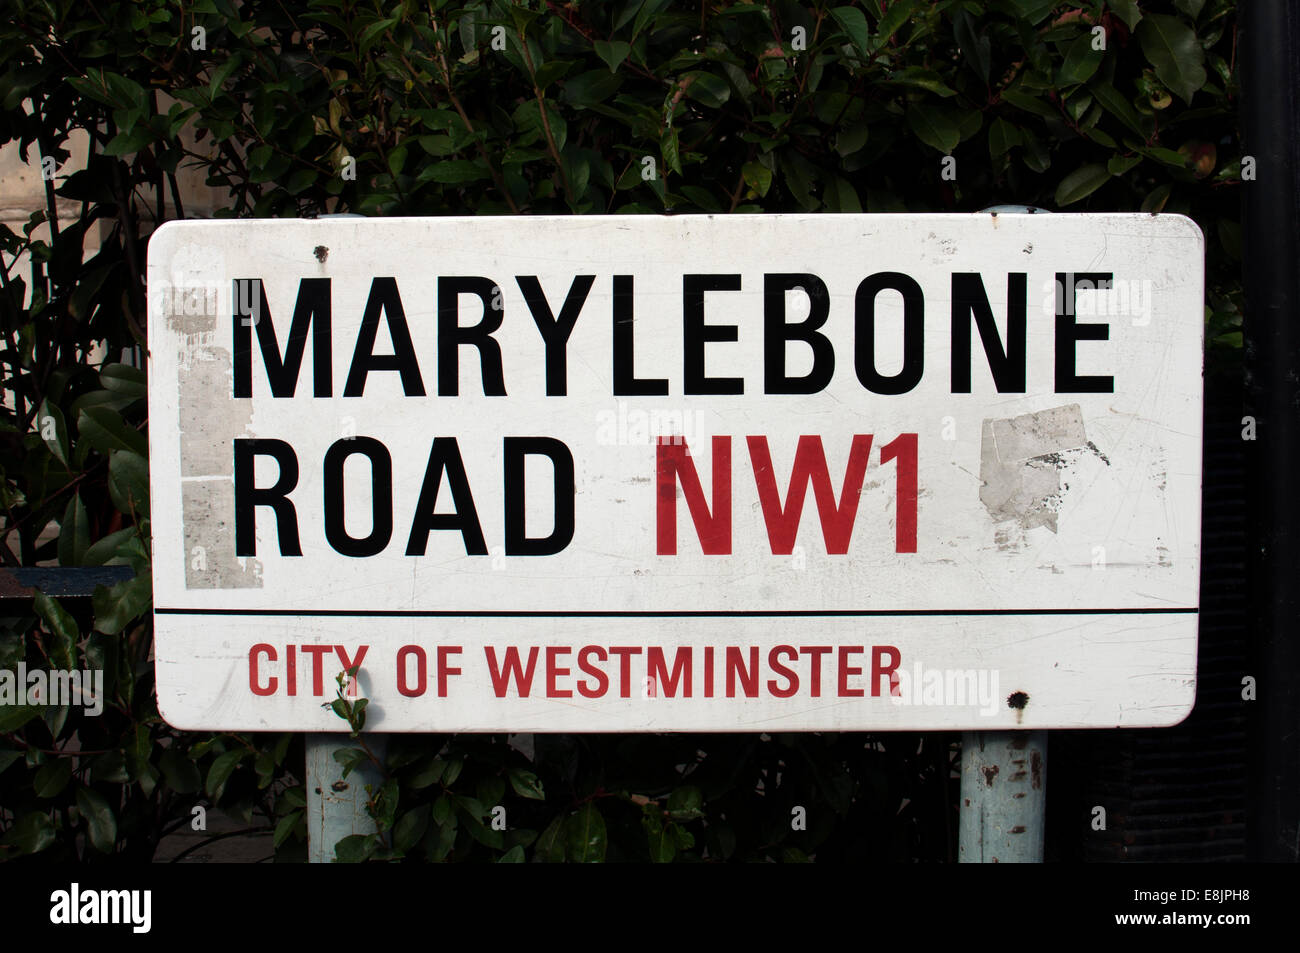 Marylebone Road NW1 sign, London, UK Stock Photo